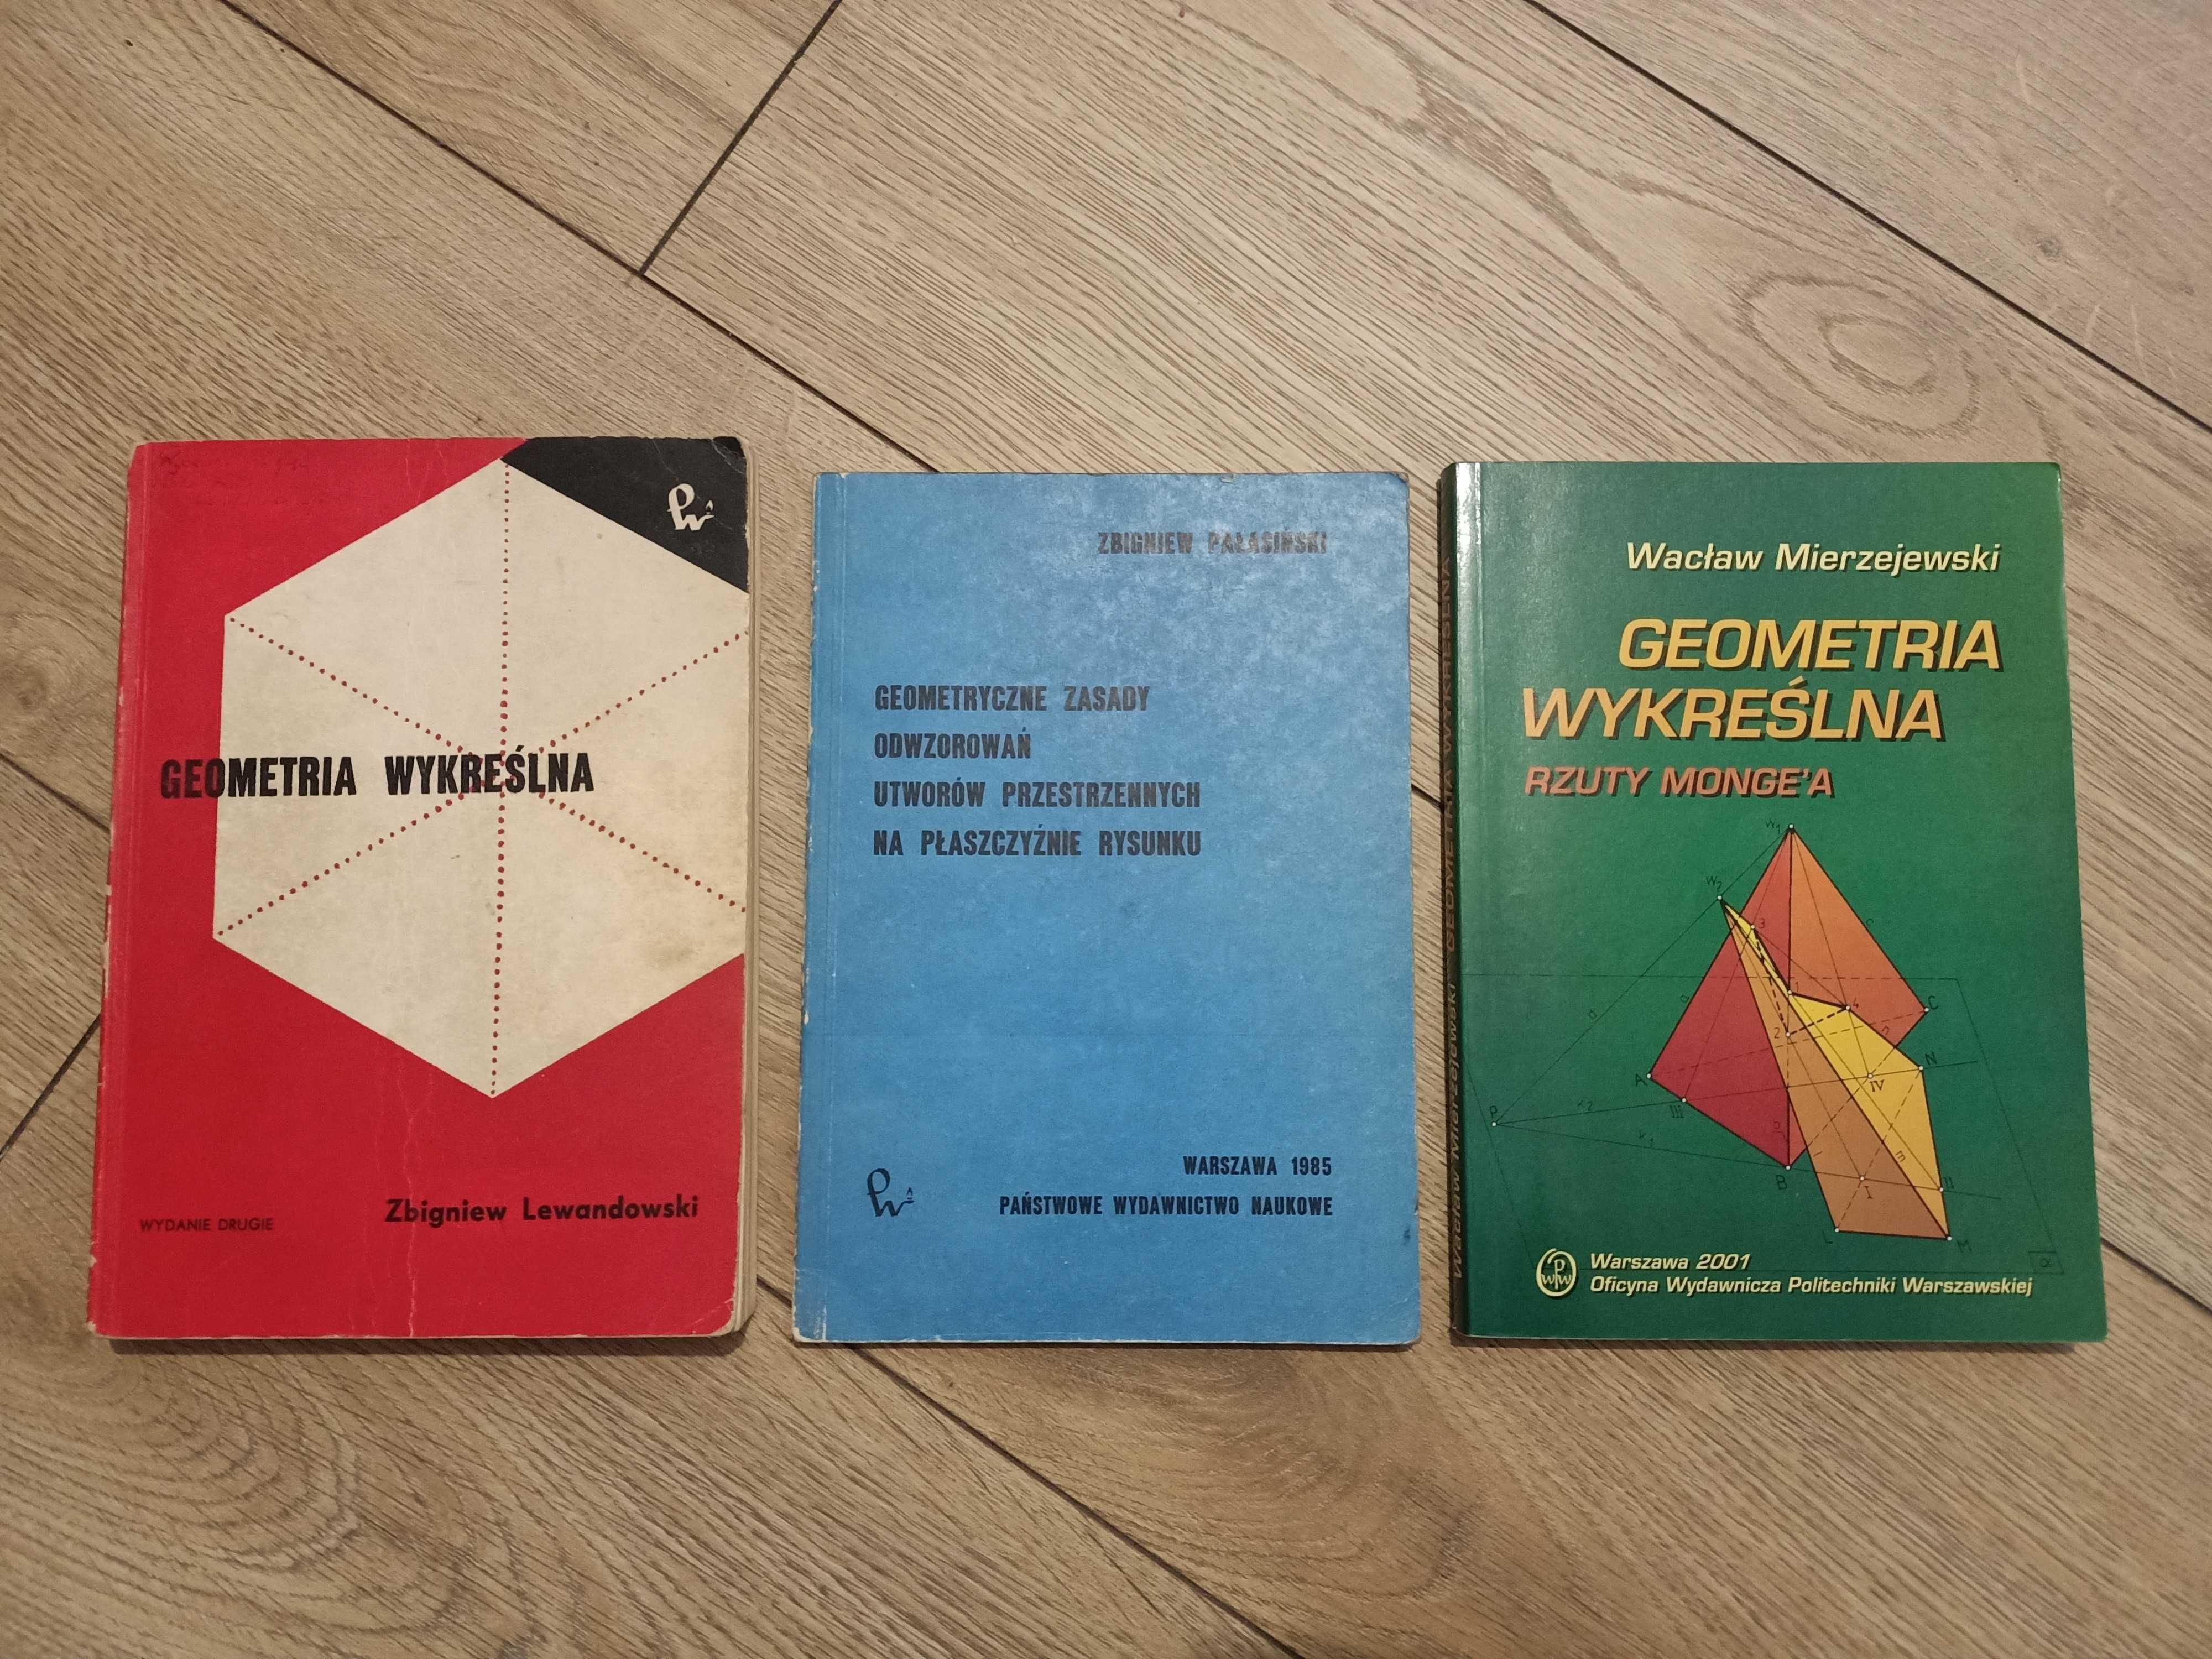 Geometria wykreślna, perspektywa - książki